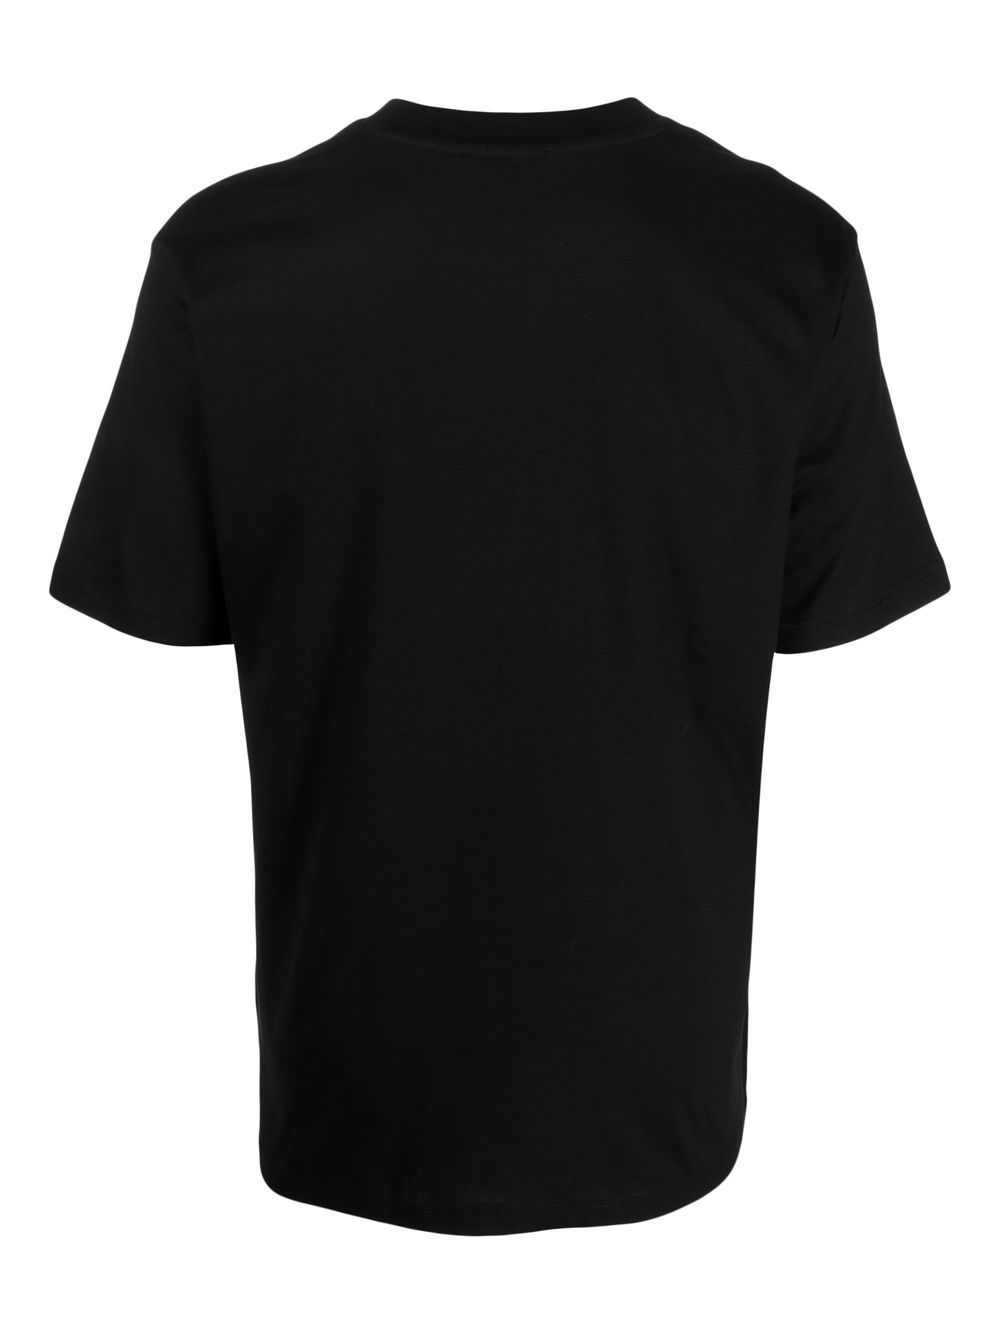 032c T-shirt met logopatch - Zwart